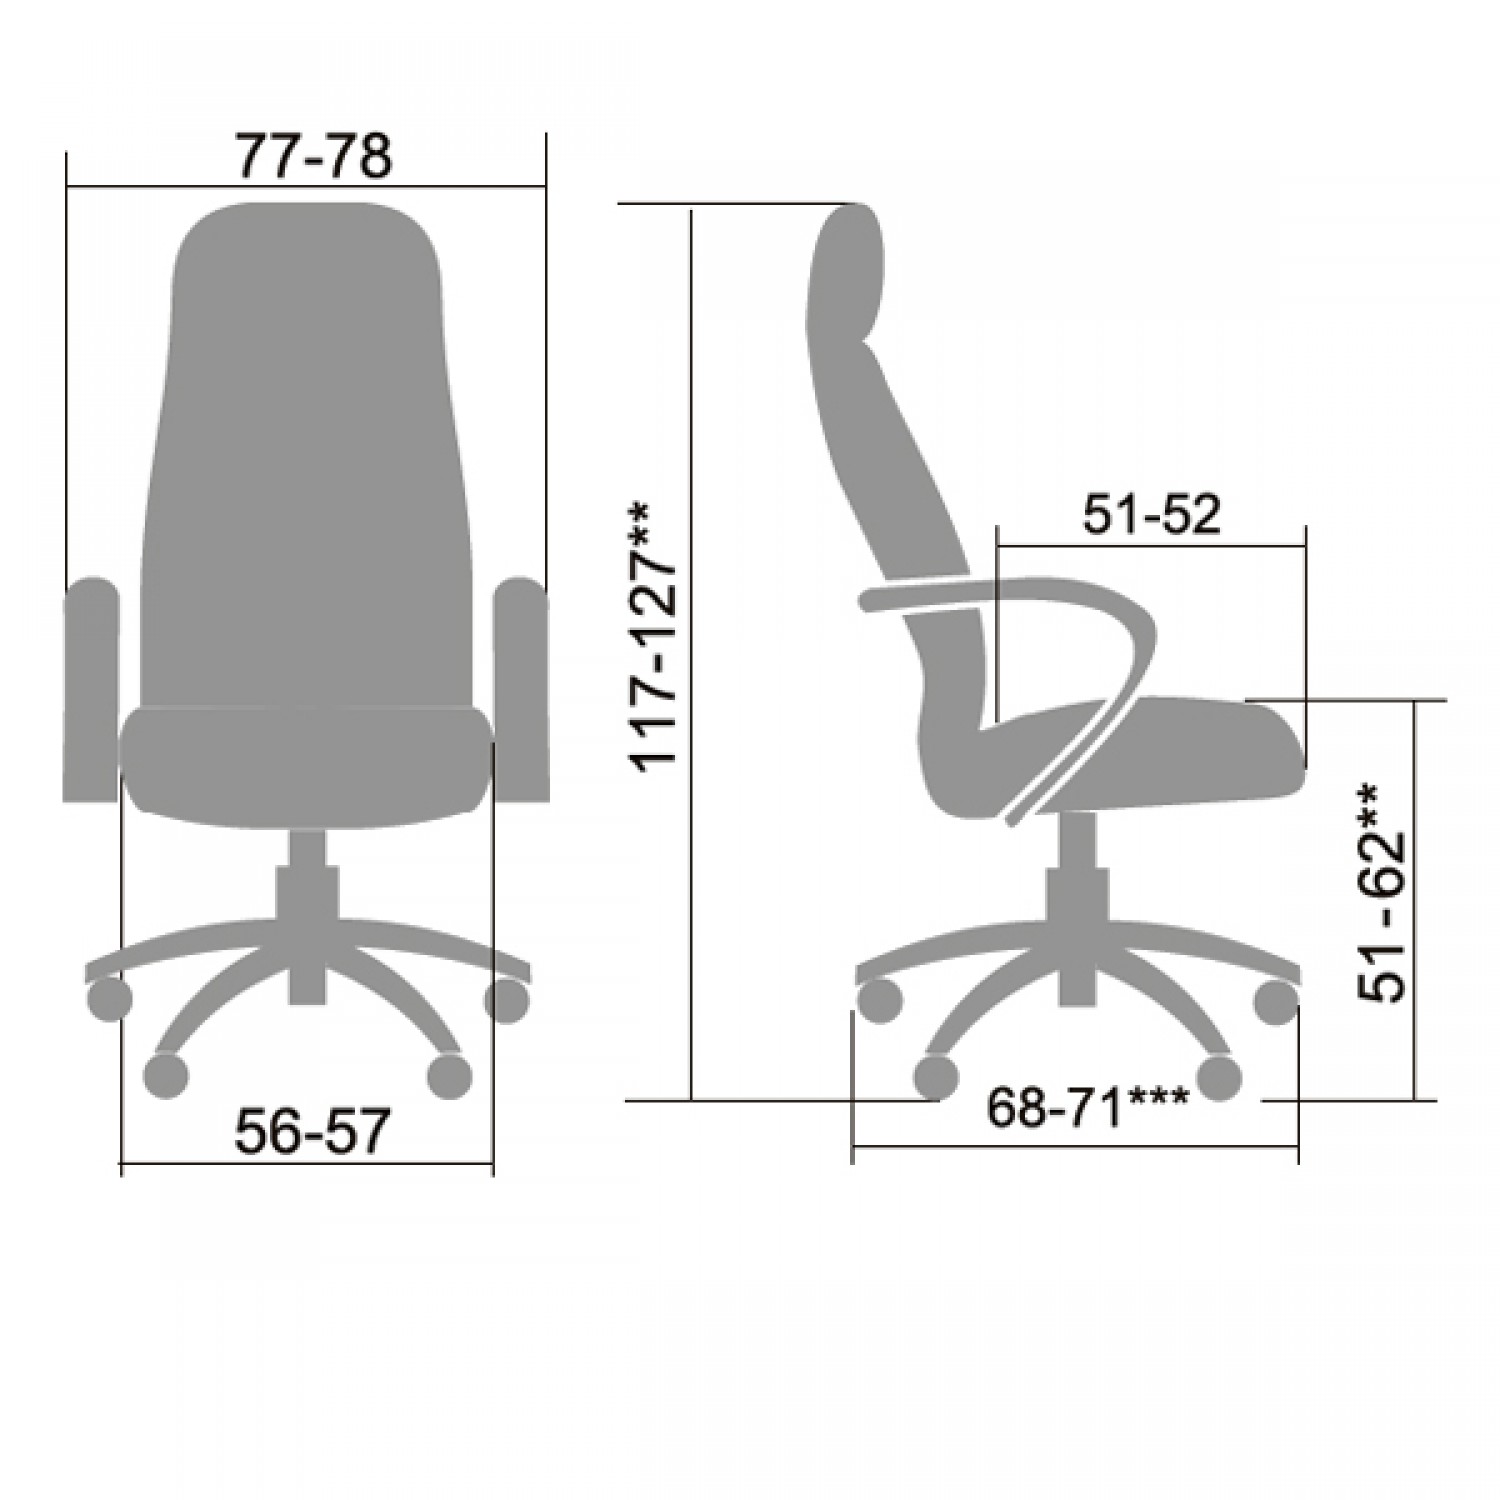 максимальная высота офисного кресла